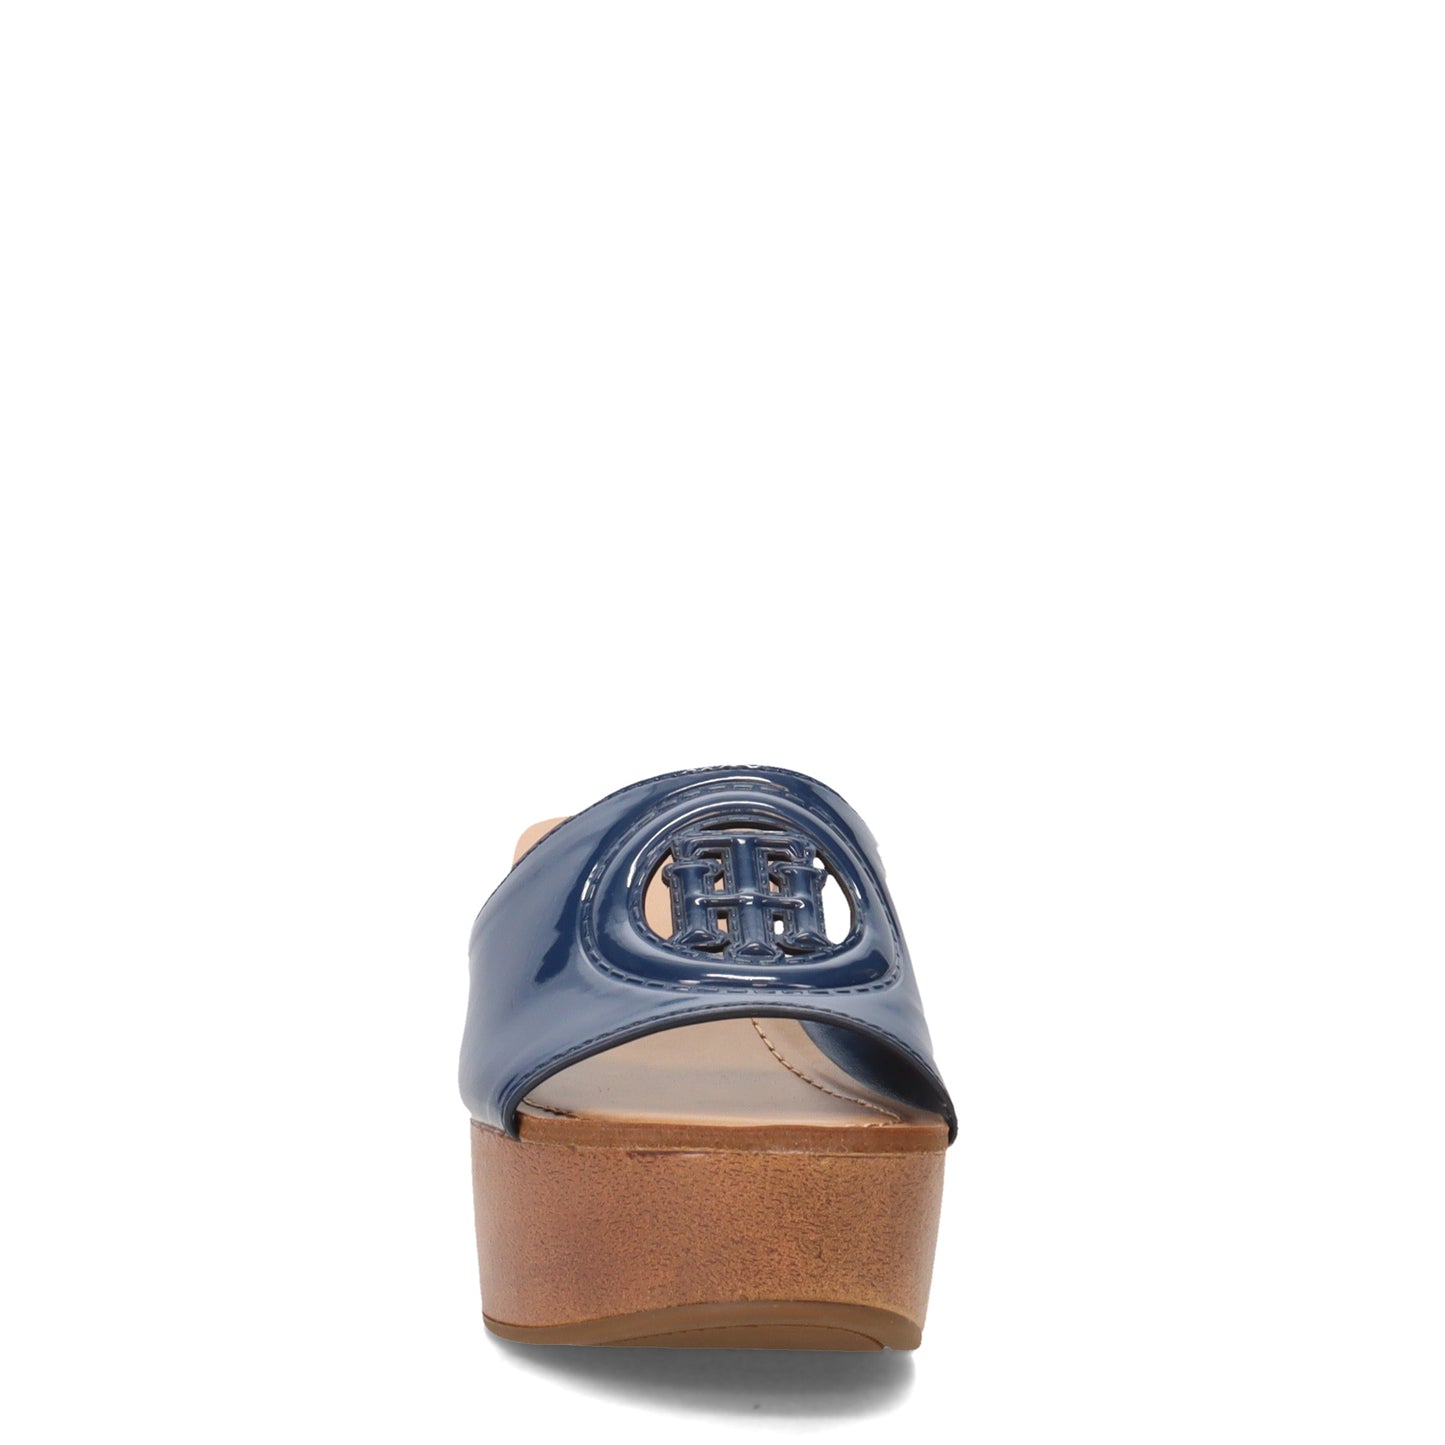 Peltz Shoes  Women's Tommy Hilfiger Wrynn Sandal DARK BLUE WRYNN-DBL01